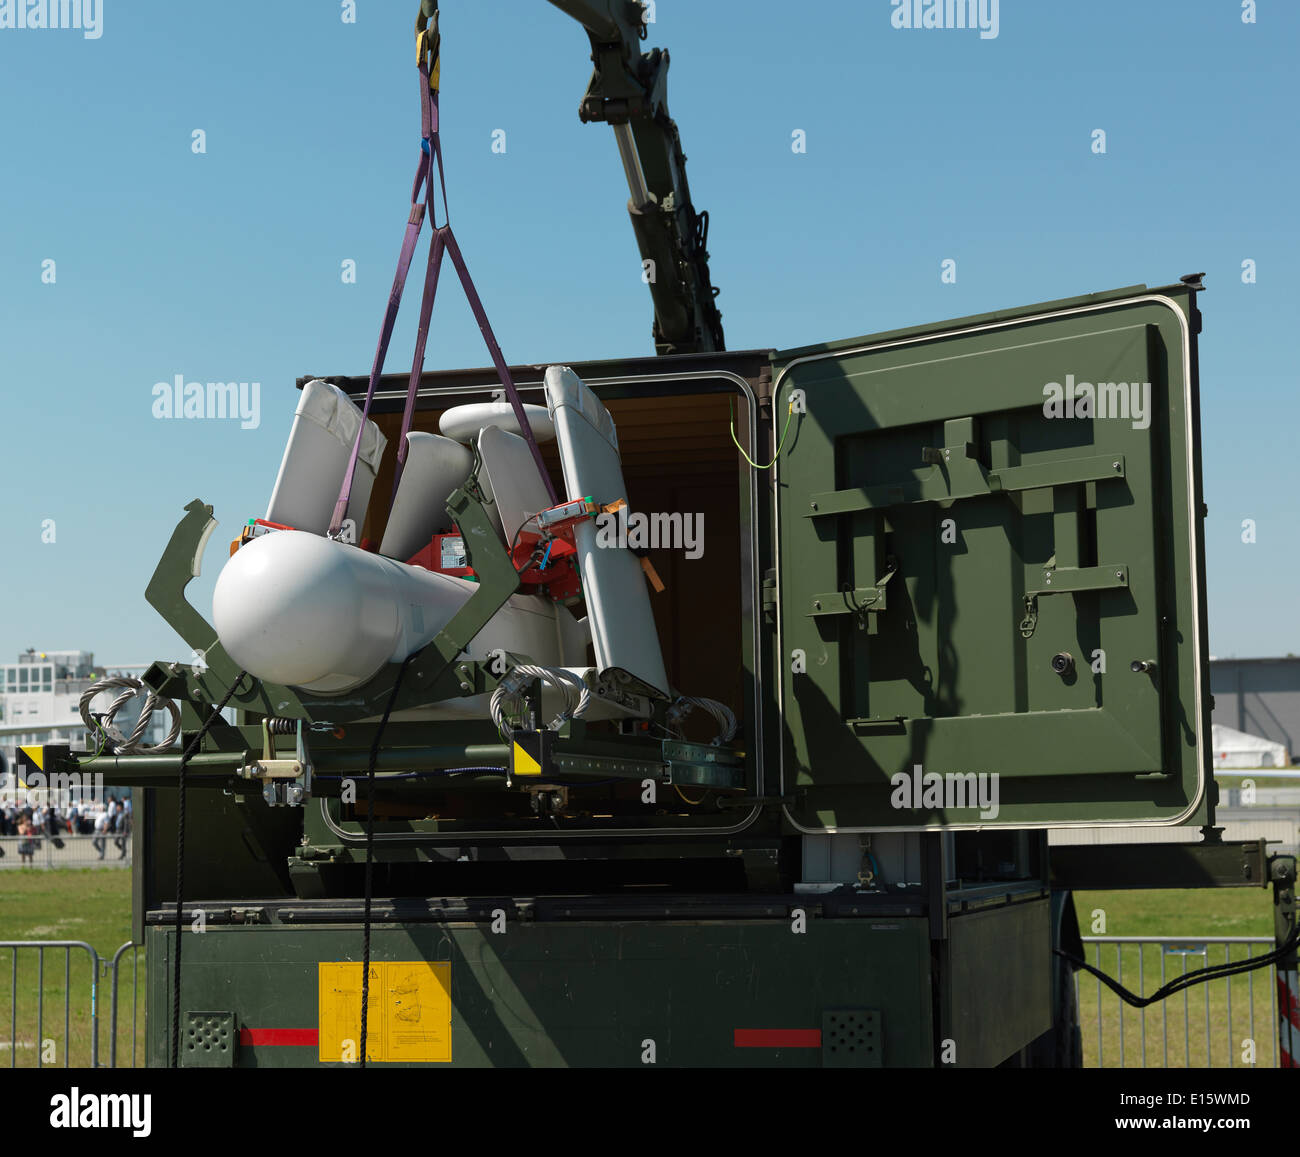 UAV KZO un alemán de reconocimiento y Adquisición de Blancos drone mostrada por el Ejército Alemán (Deutsches Heer), plegada para transporte. Foto de stock